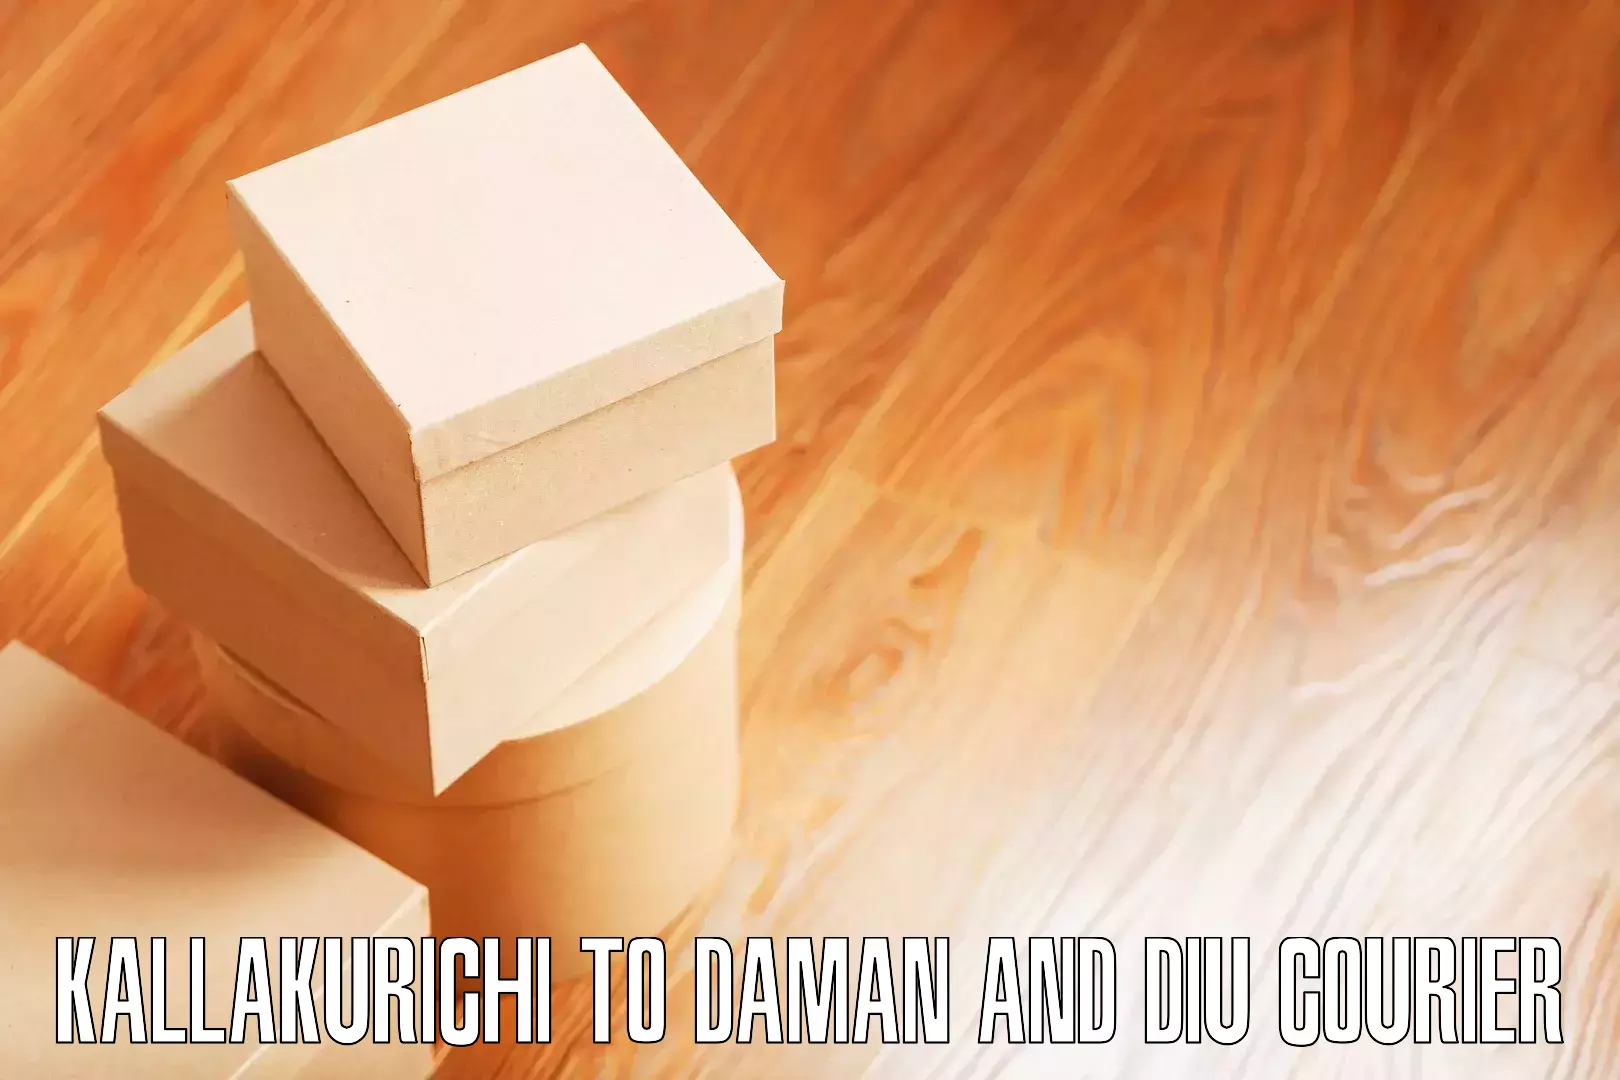 Furniture moving experts Kallakurichi to Diu